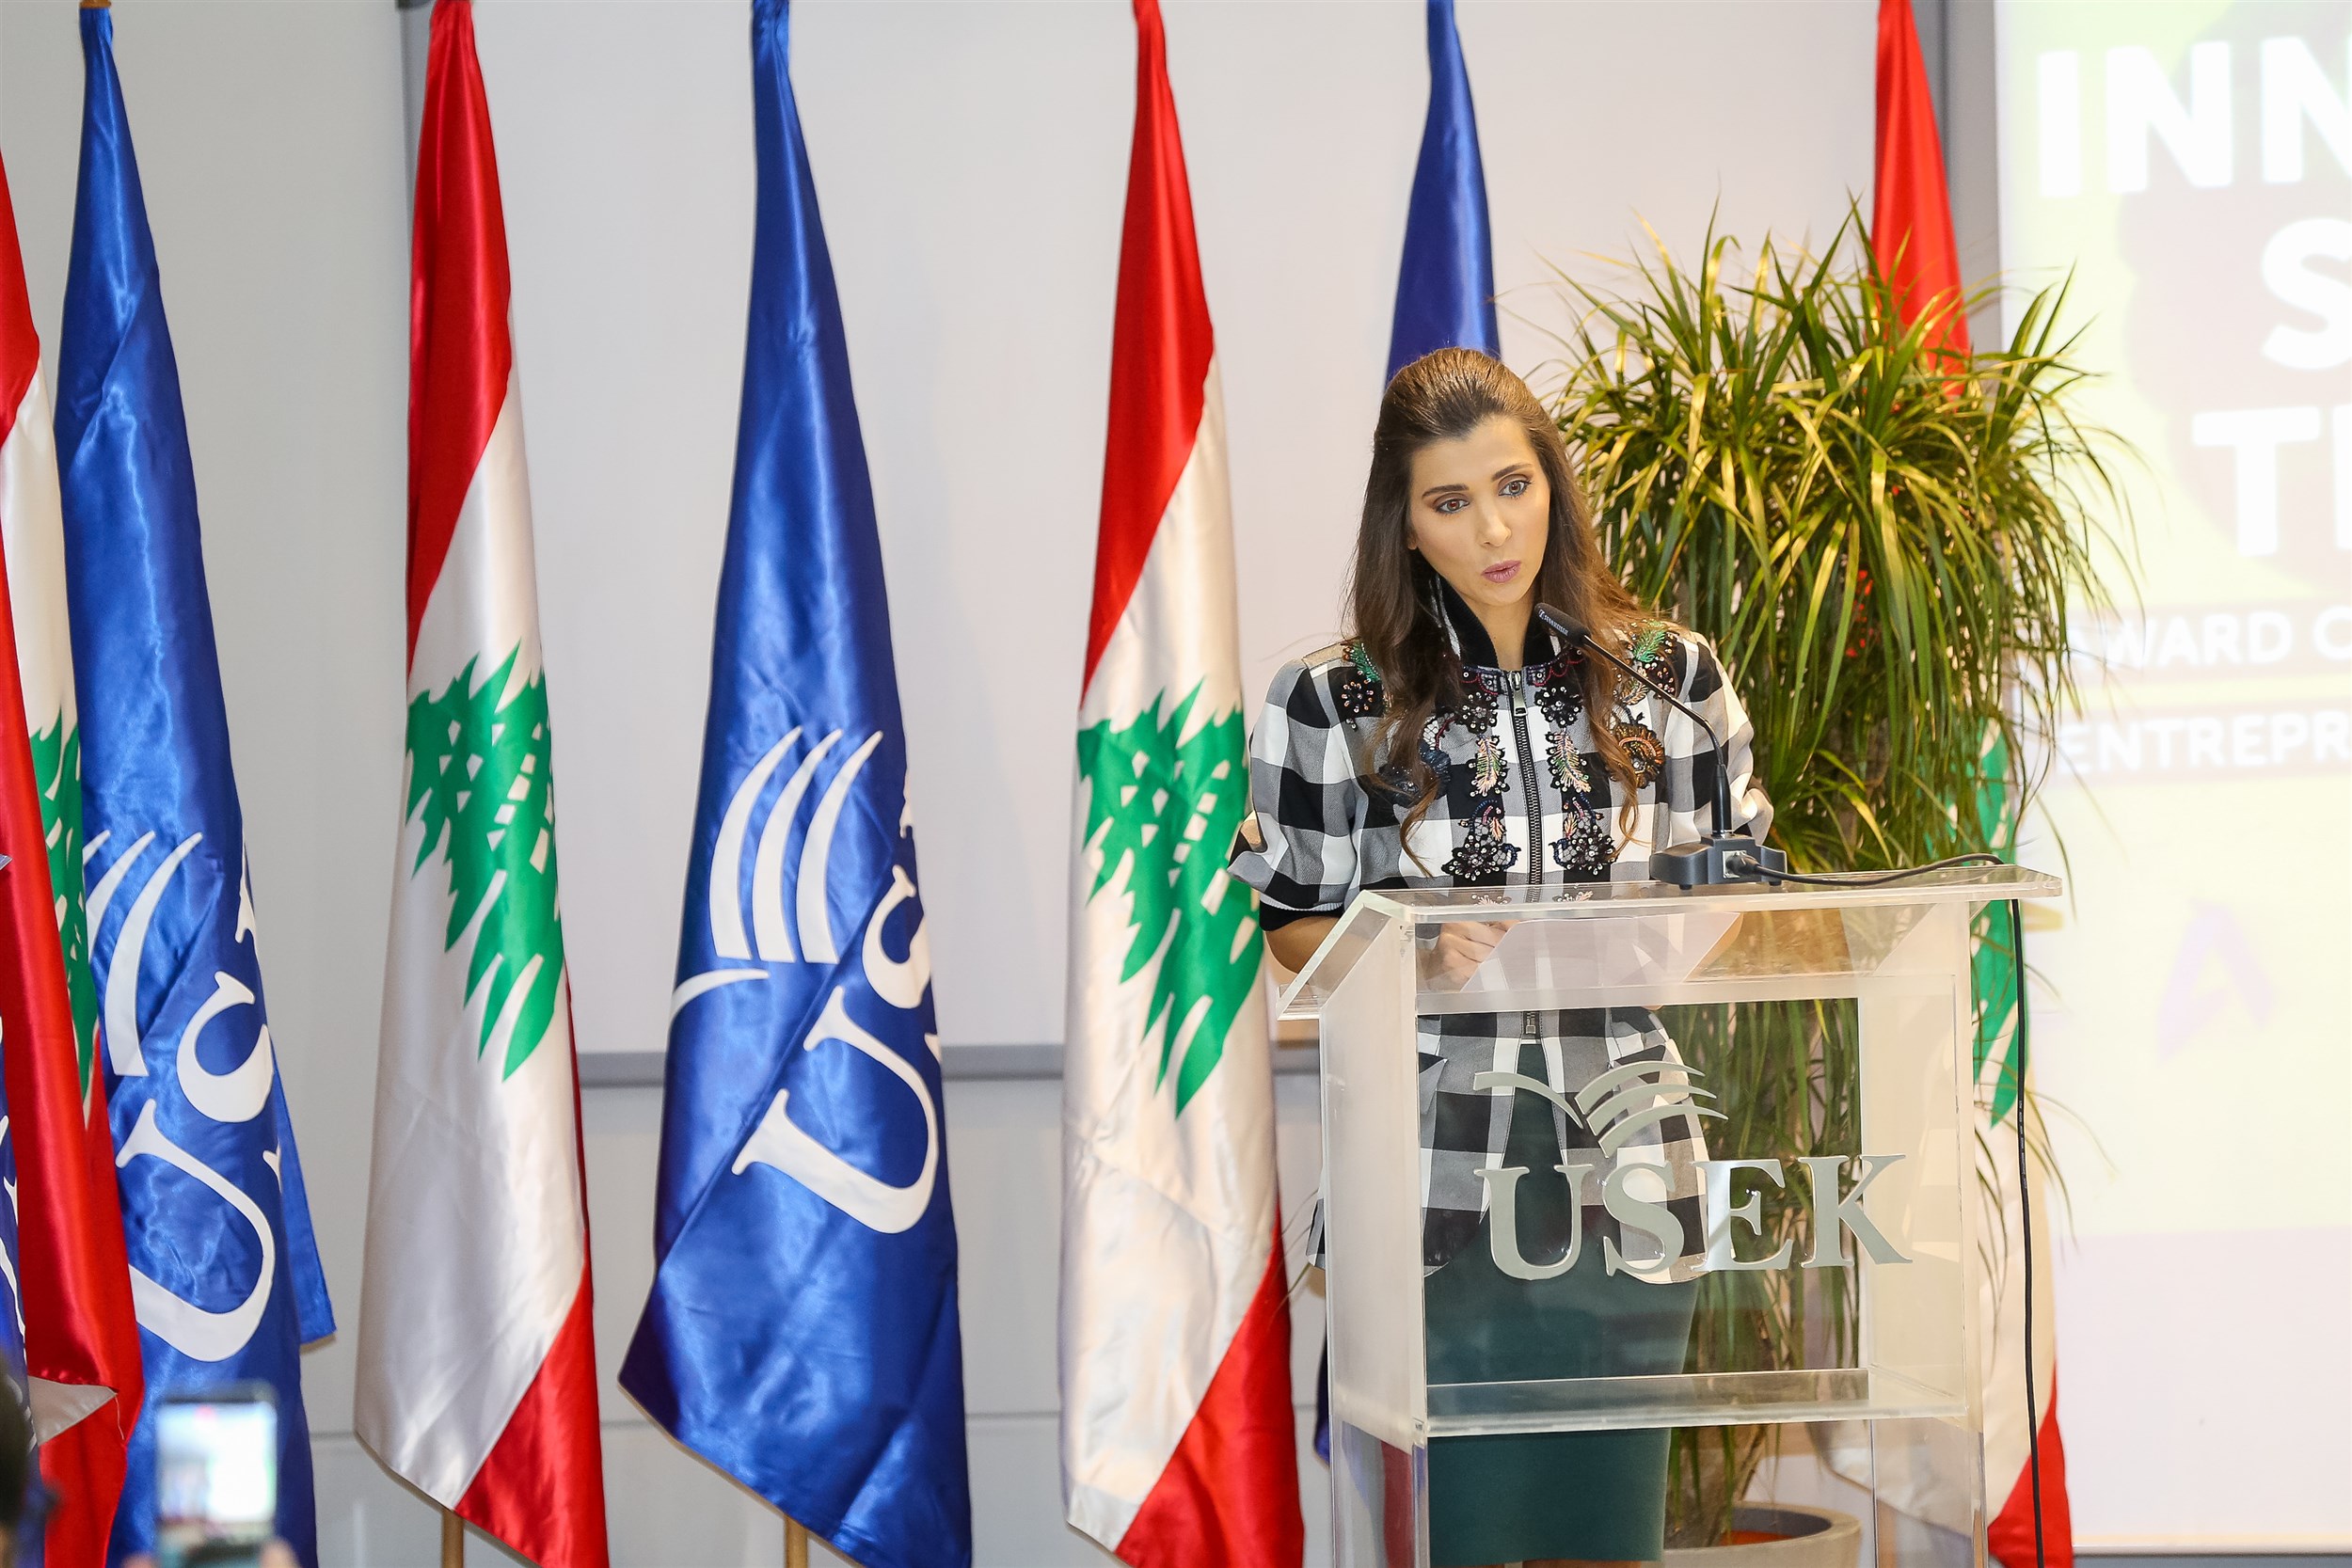 iaaf president delivering her speech